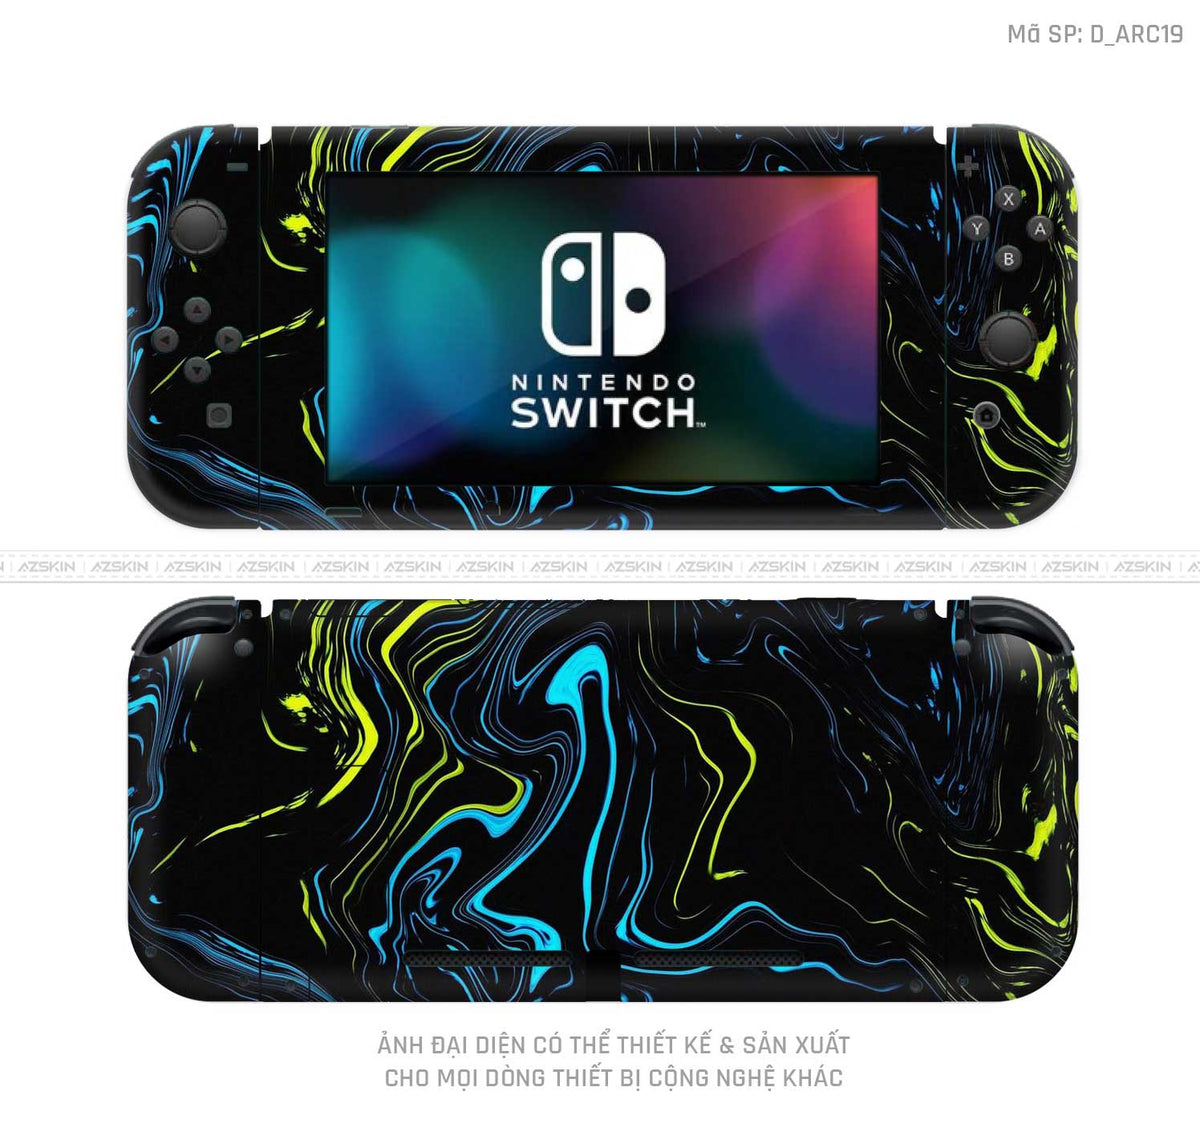 Dán Skin Máy Chơi Game Nintendo Switch Hình Nghệ Thuật Arcrylic | D_ARC19